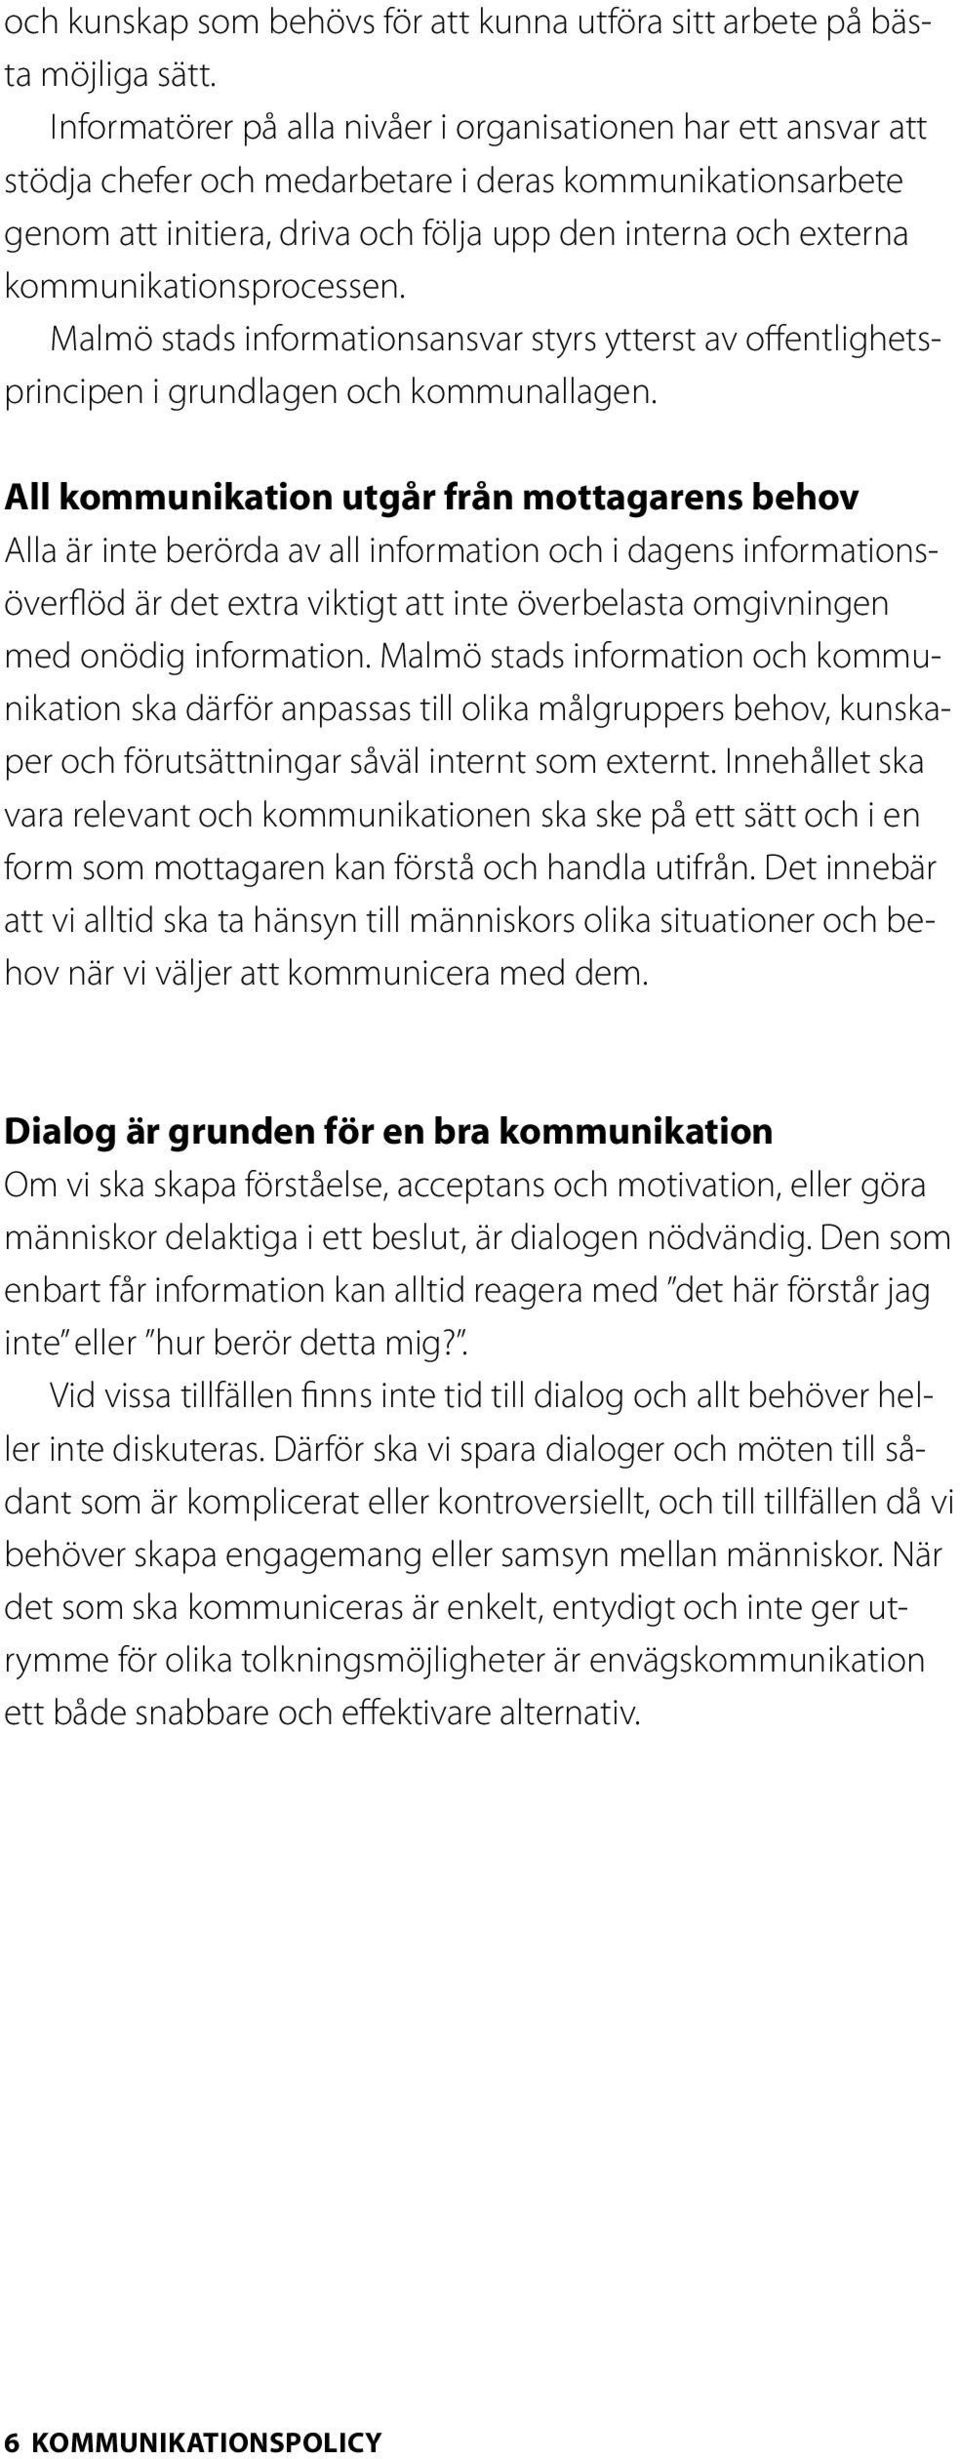 kommunikationsprocessen. Malmö stads informationsansvar styrs ytterst av offentlighetsprincipen i grundlagen och kommunallagen.